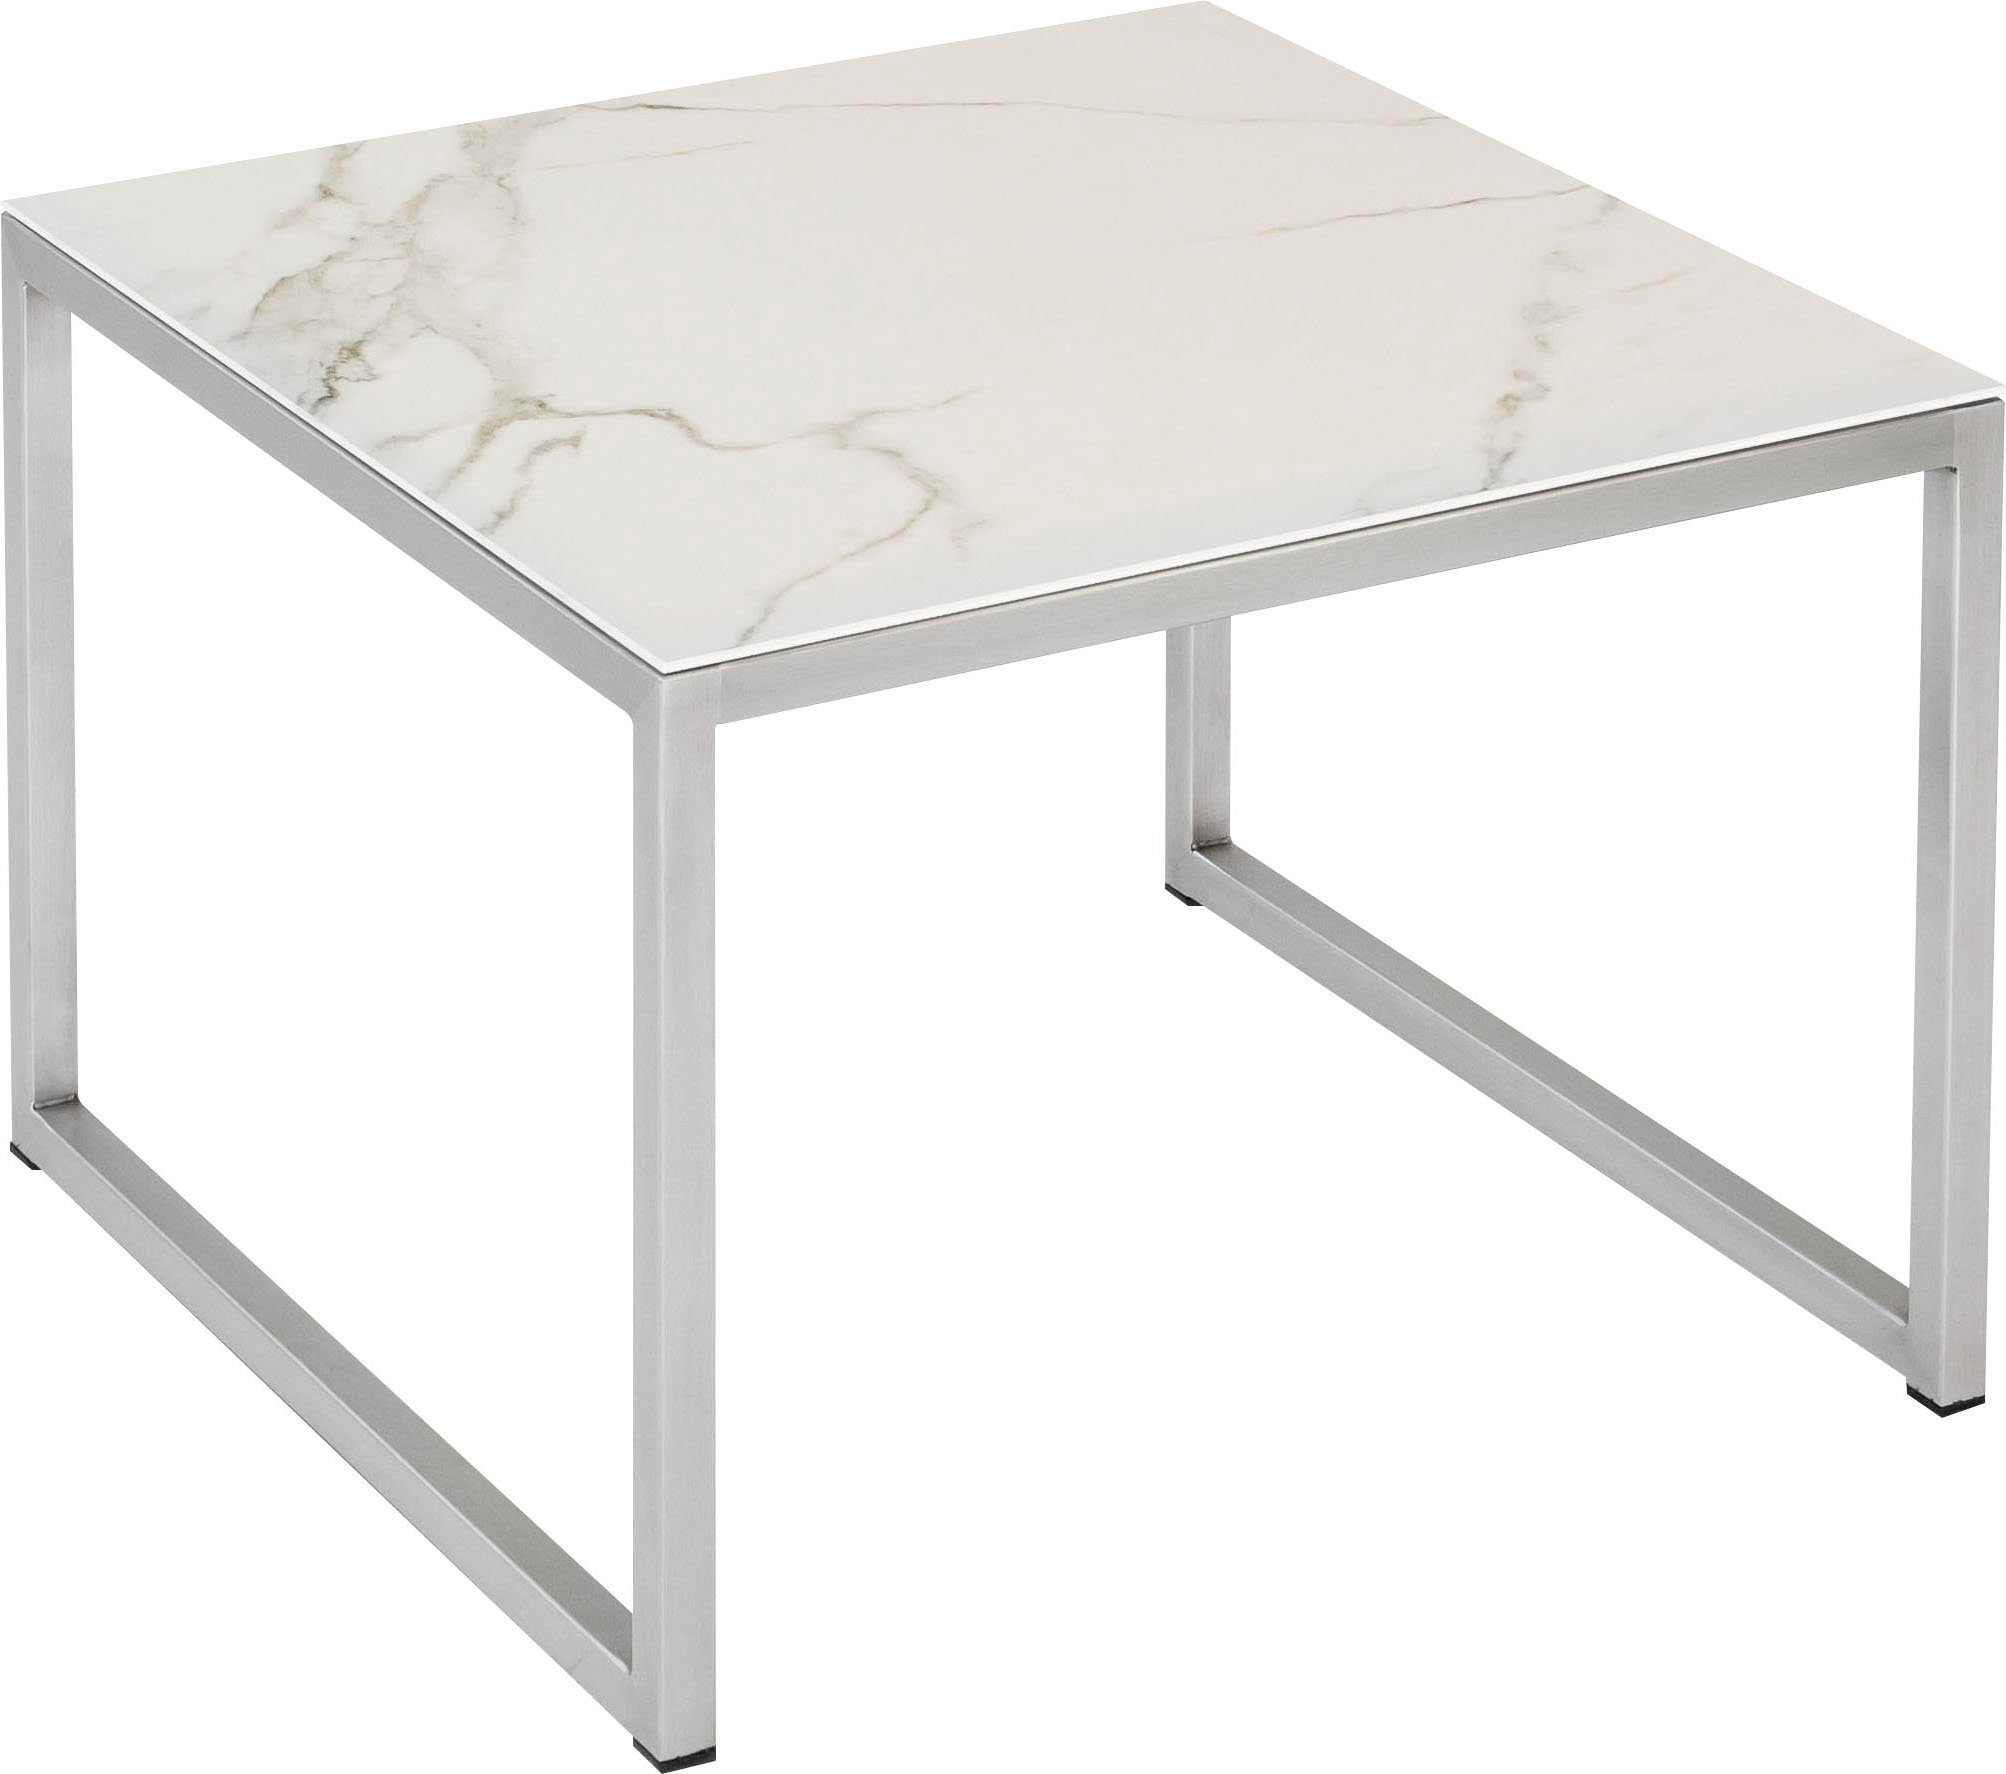 Henke Möbel Beistelltisch, Tischplatte aus Keramik hochwertiger